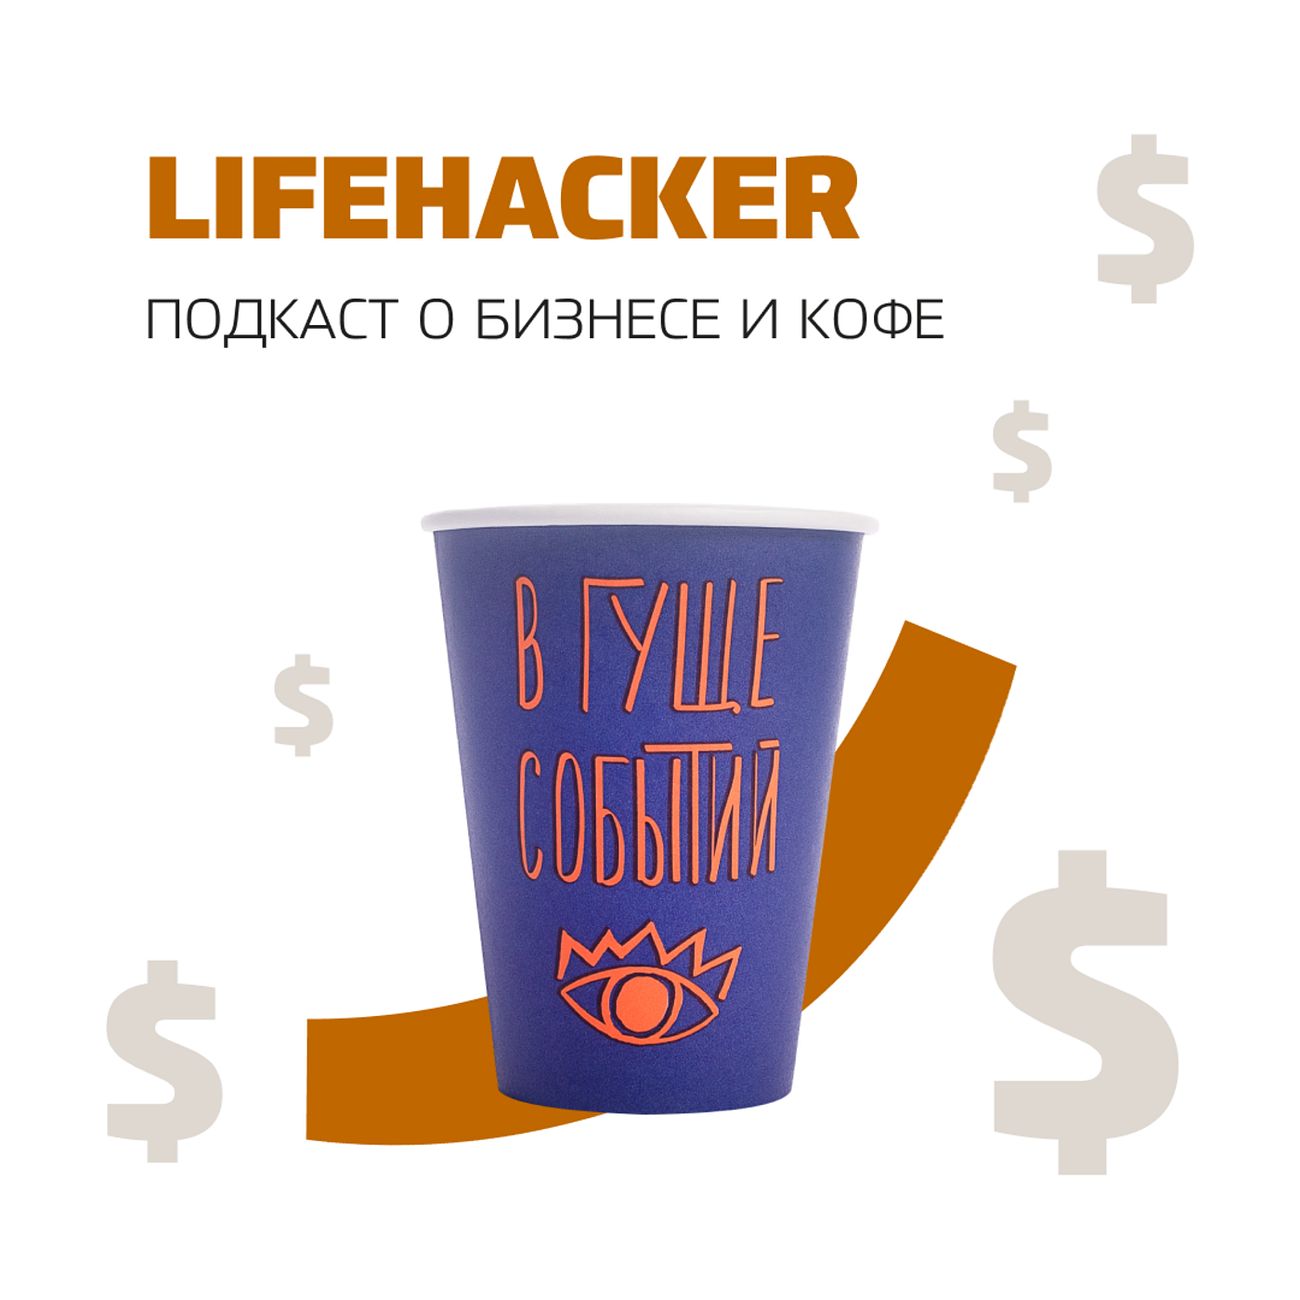 Lifehacker. Подкаст о бизнесе и кофе.